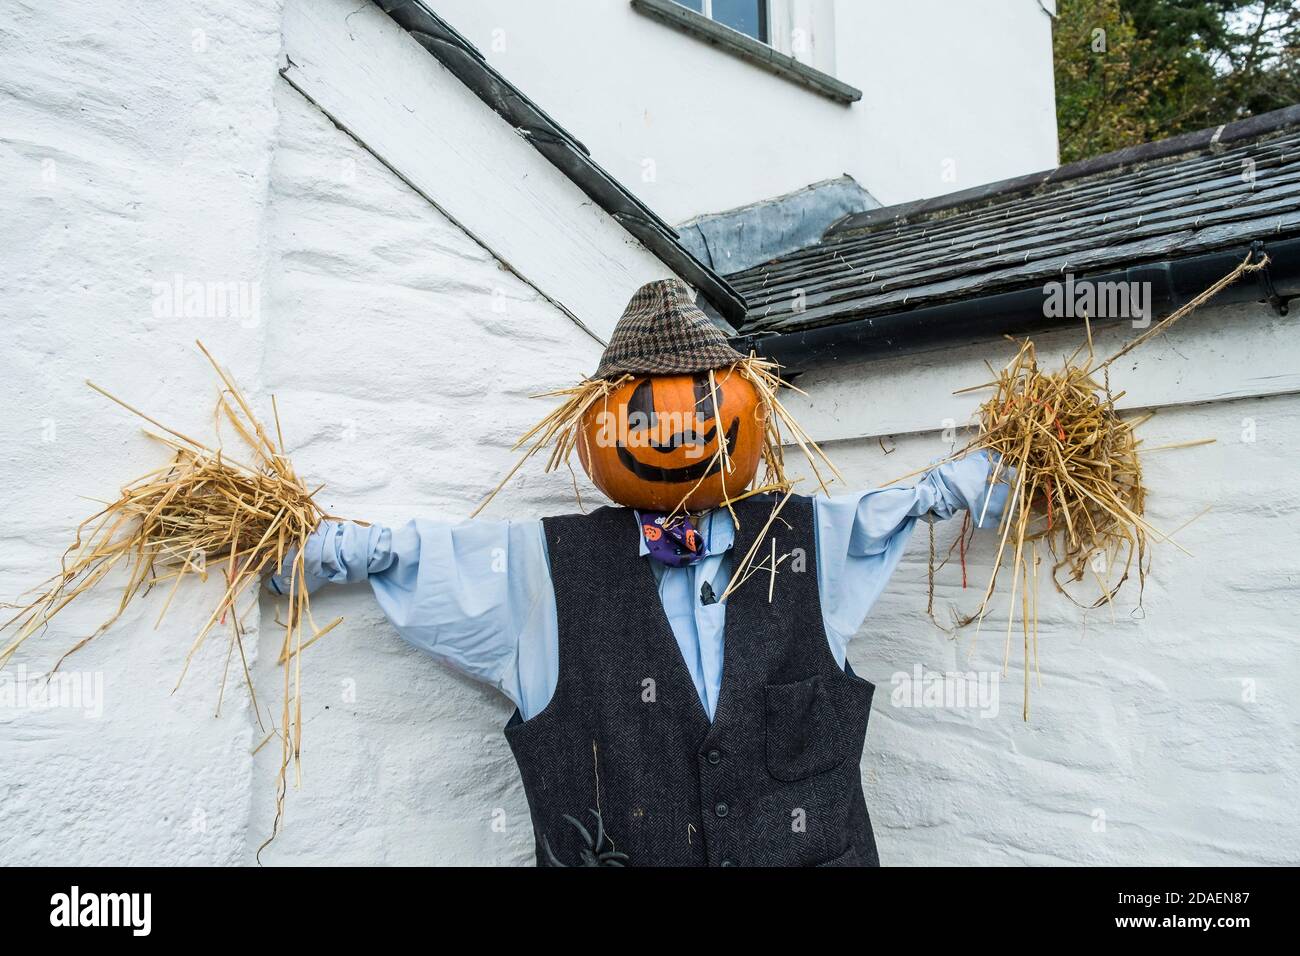 Uno spaventapasseri con una testa di zucca vestita per le celebrazioni di Halloween a Newquay in Cornovaglia. Foto Stock